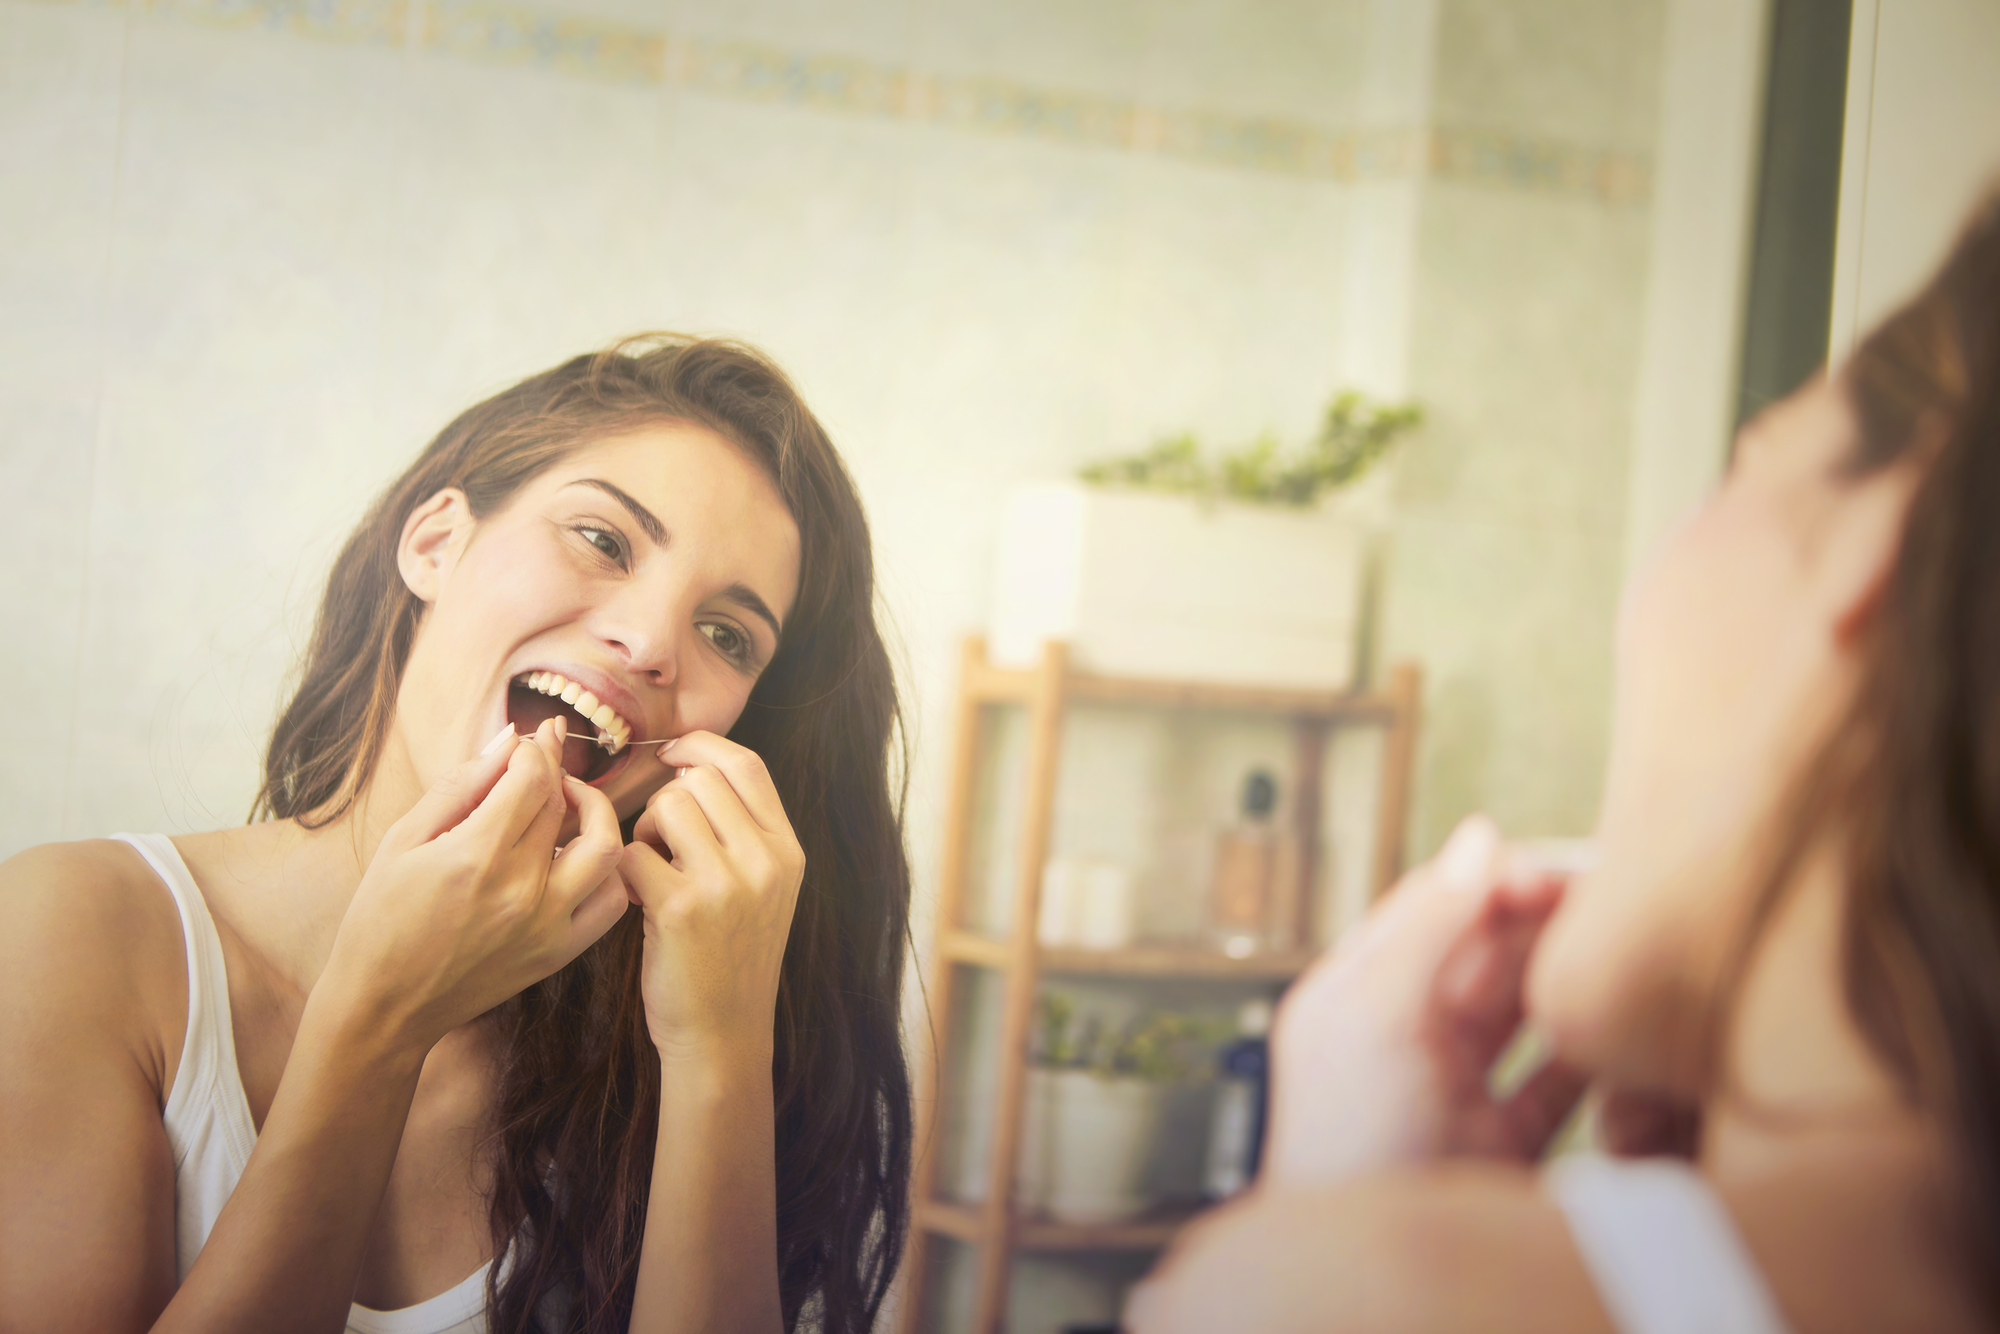 woman flossing teeth in mirror